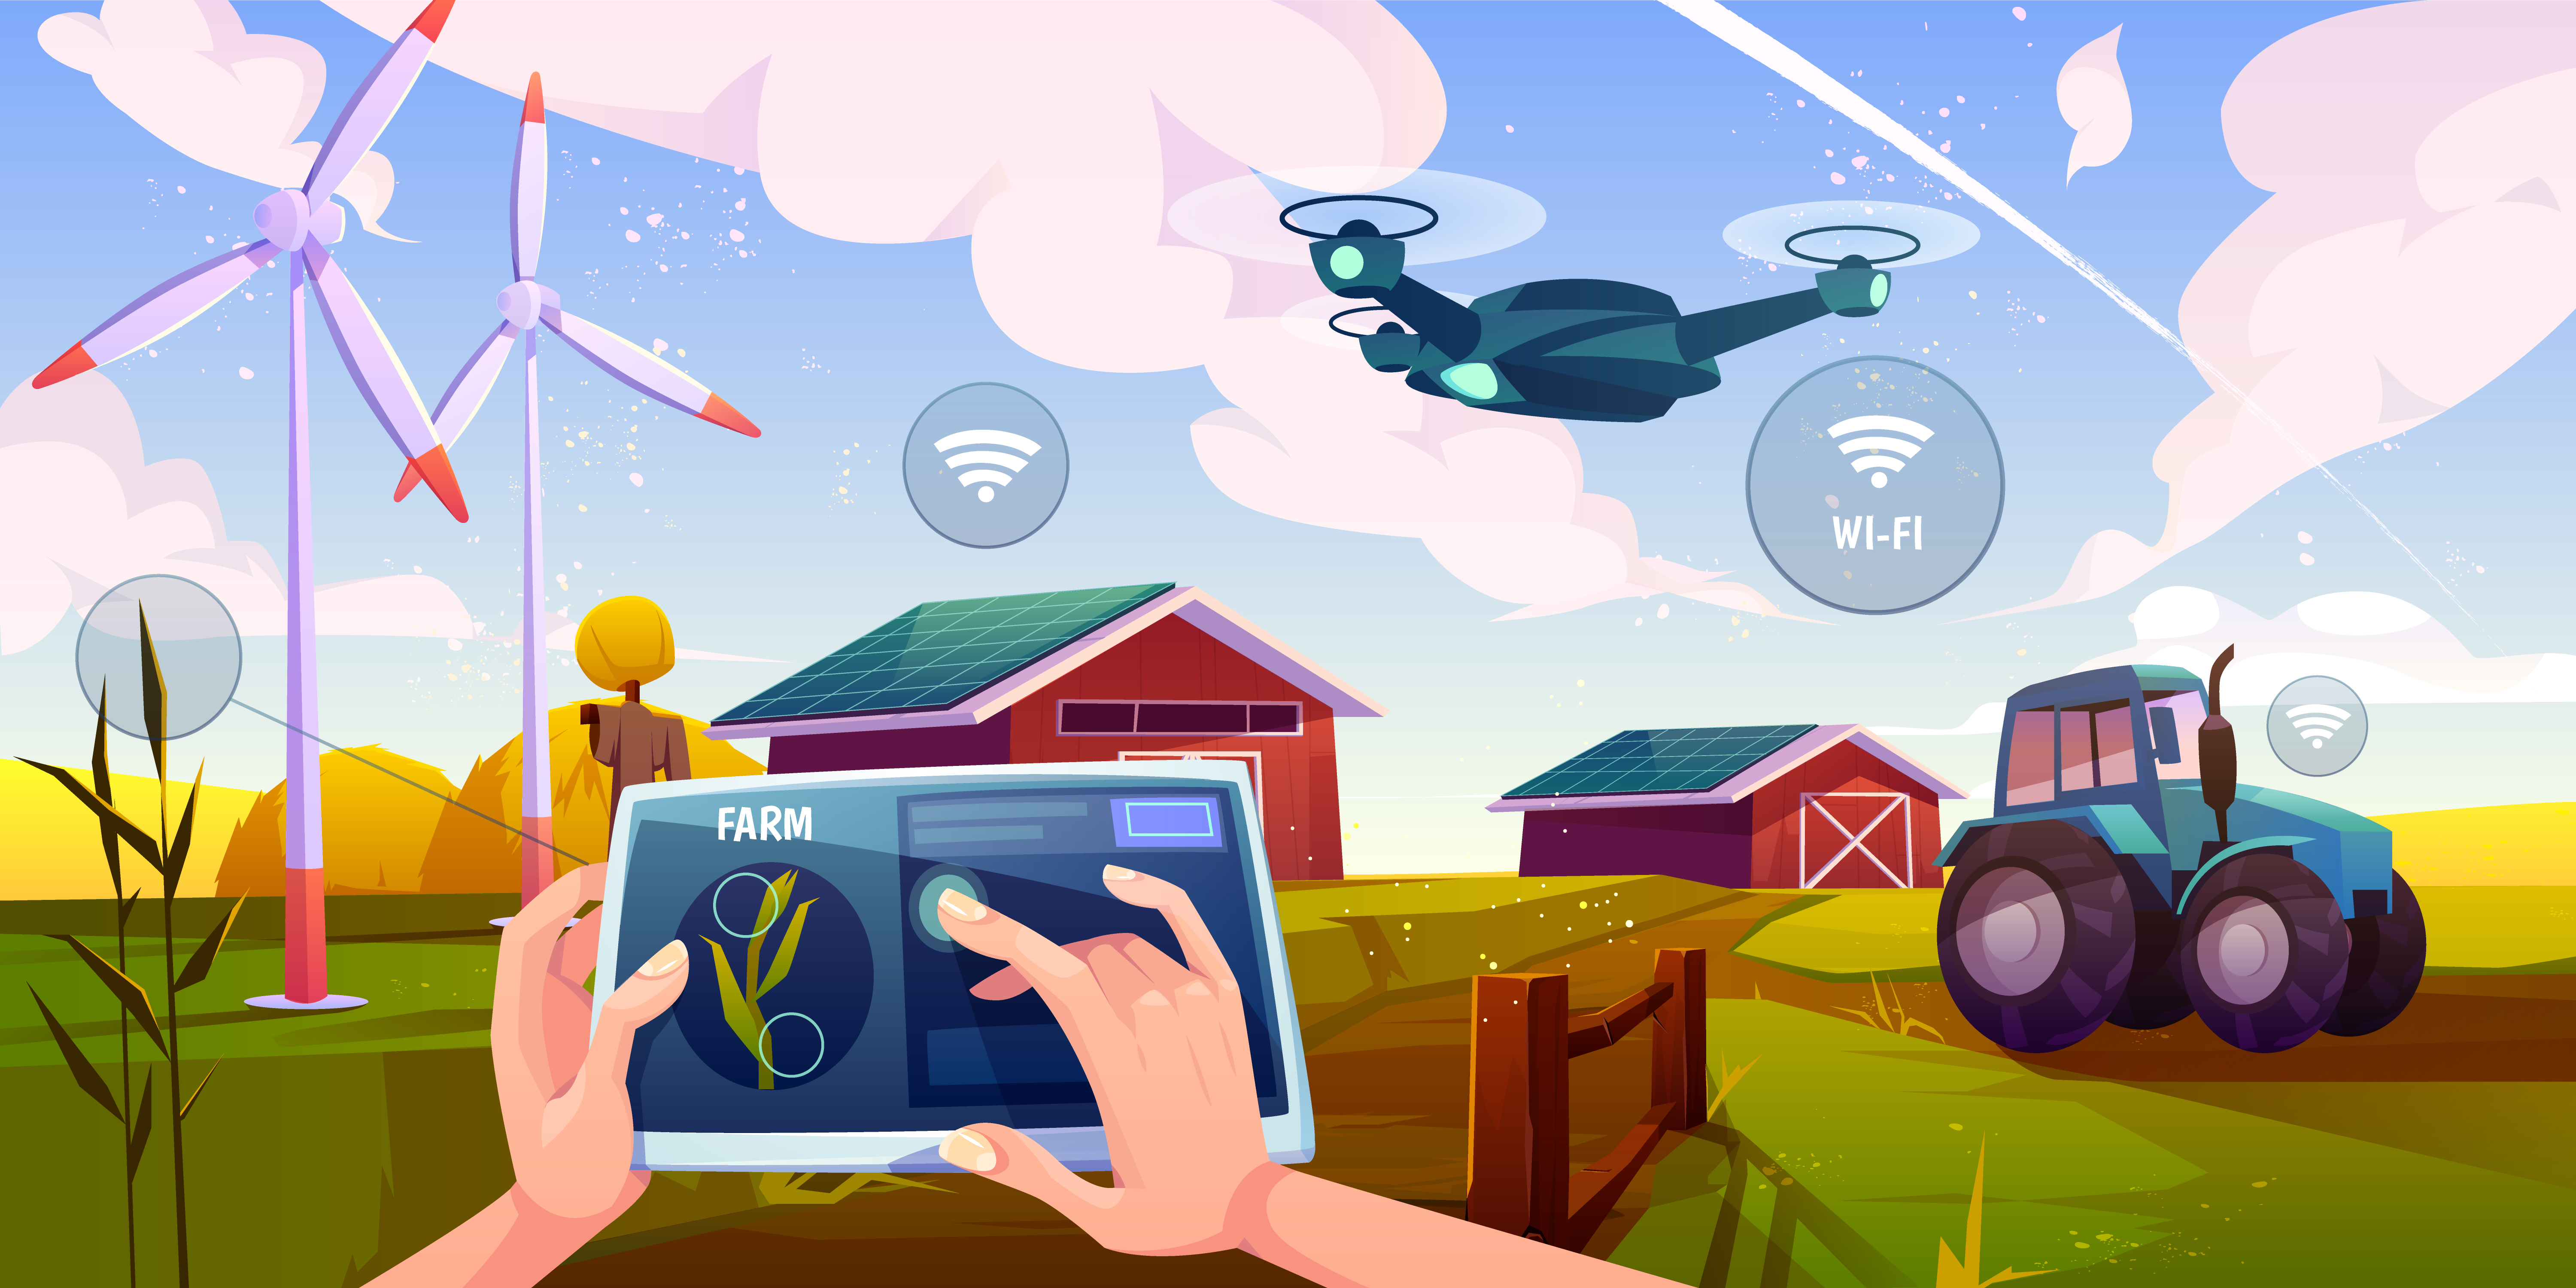 Agricoltura sostenibile, spazio ai droni